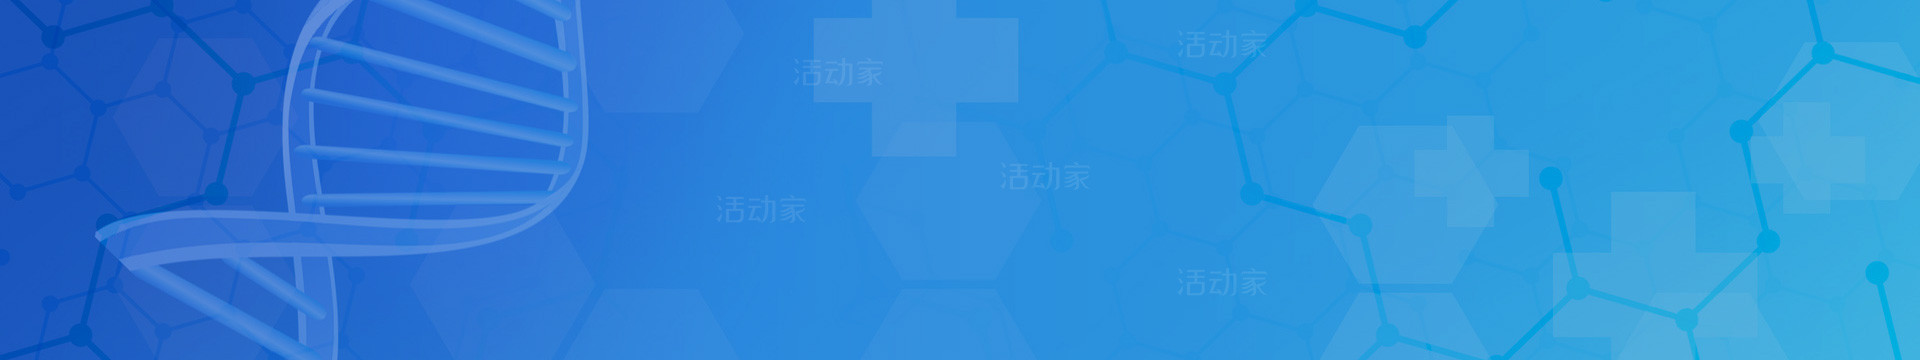 2021中国肿瘤标志物学术大会暨第十五届肿瘤标志物青年科学家论坛